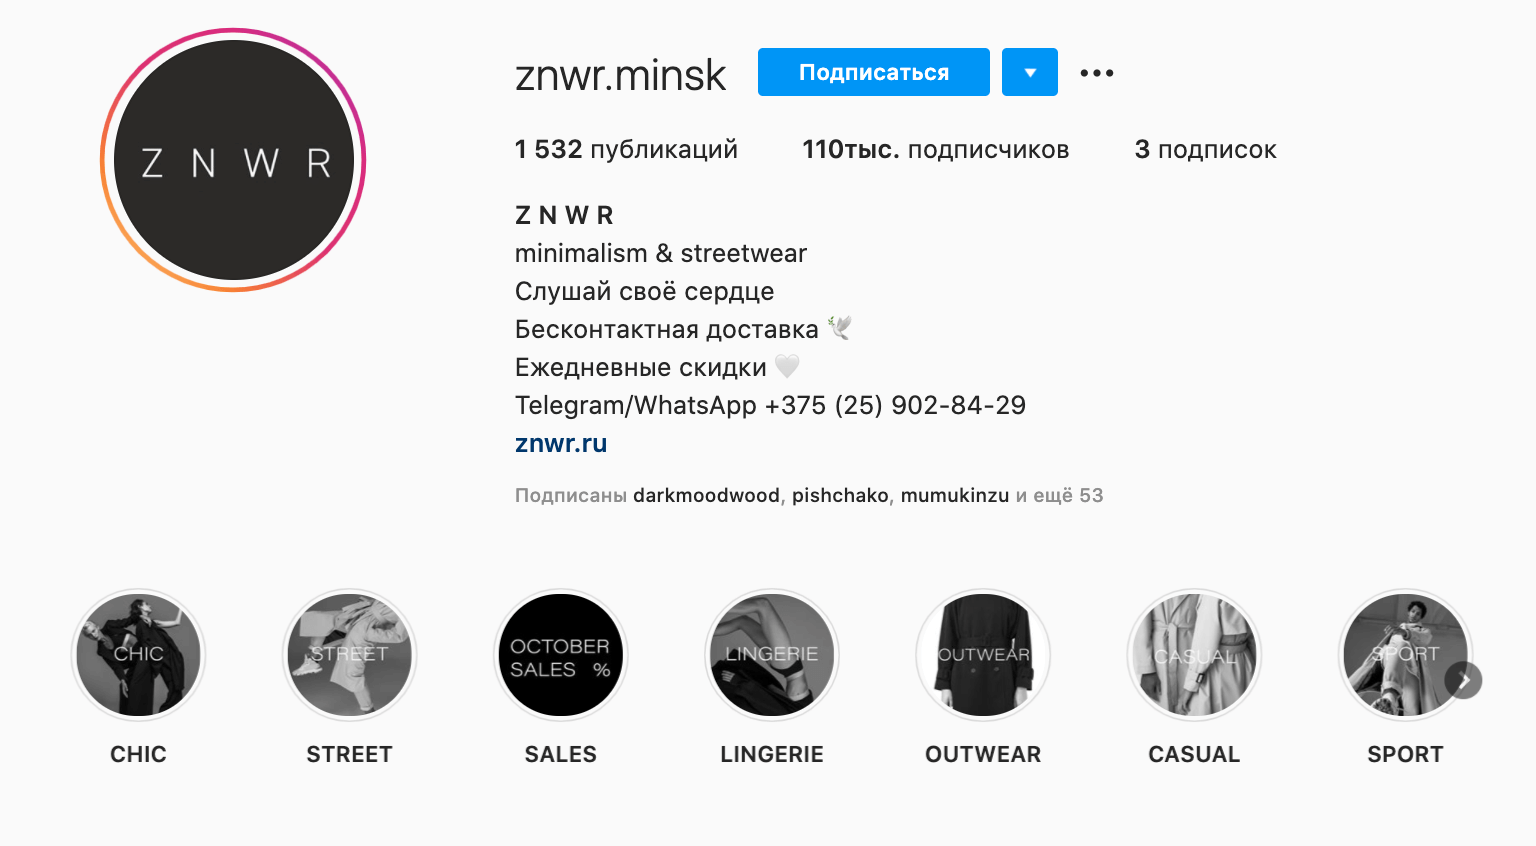 Вариант как создать иконки для Актуального в Инстаграме на примере @znwr.minsk